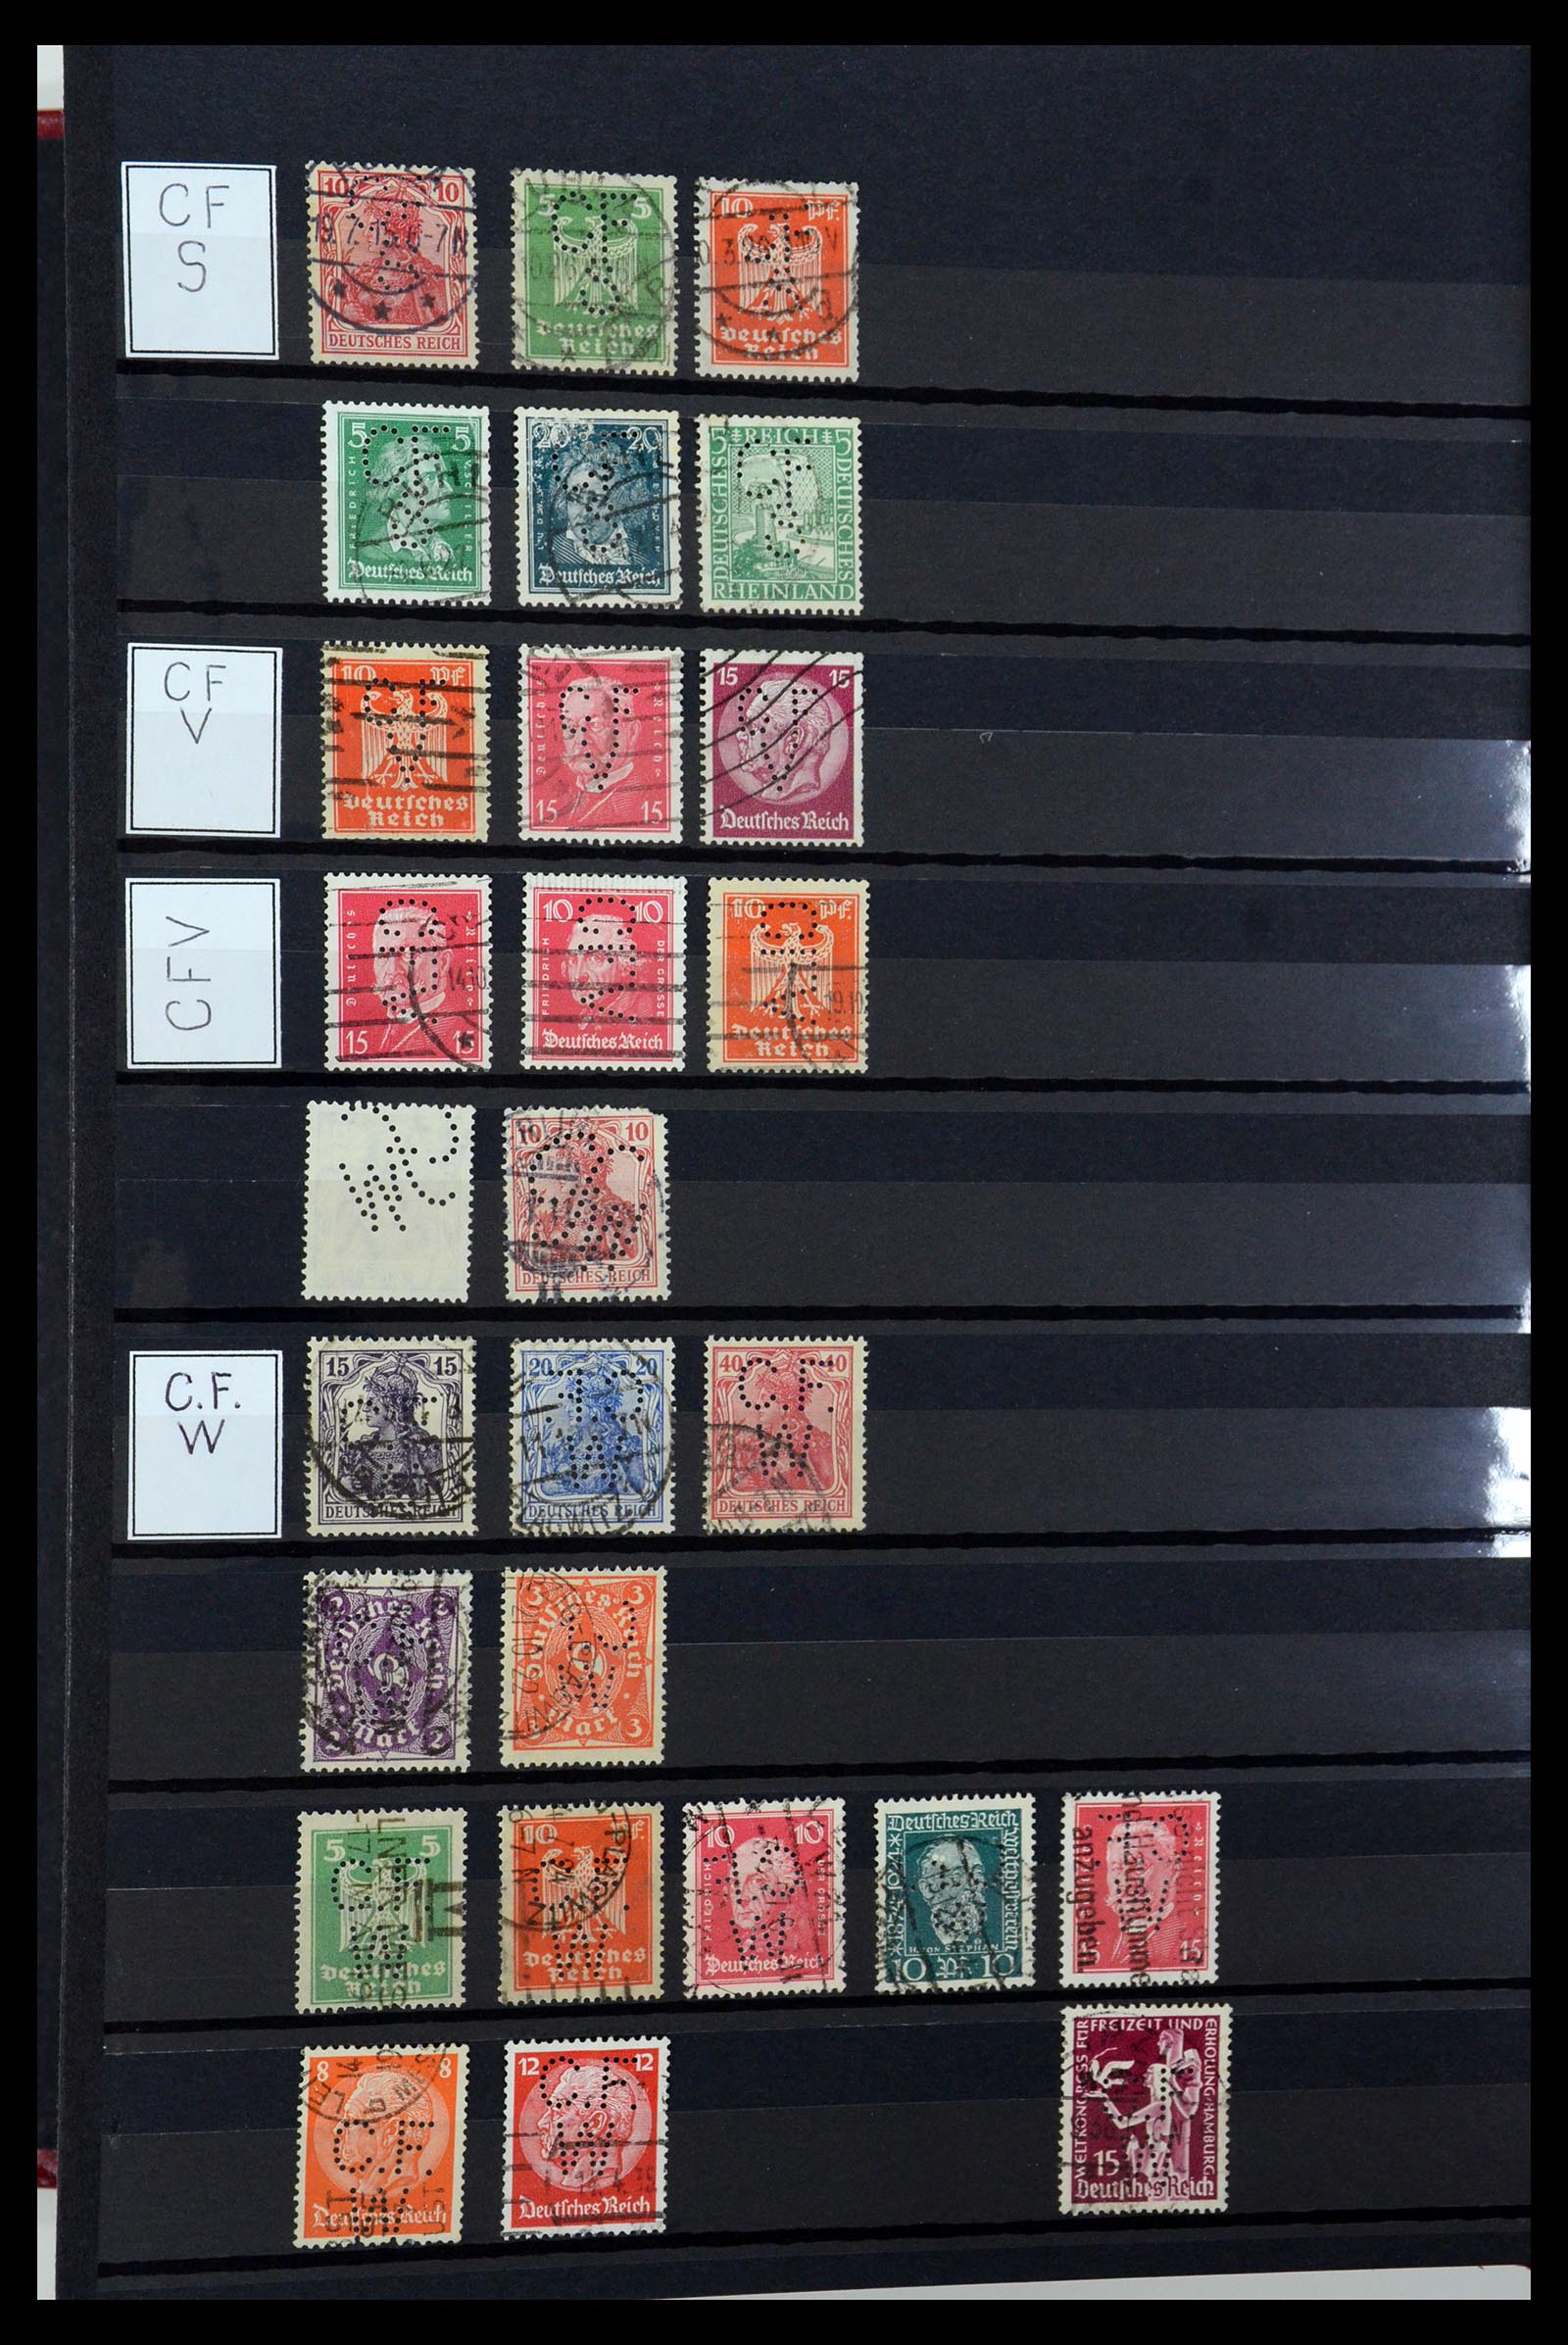 36405 068 - Stamp collection 36405 German Reich perfins 1880-1945.